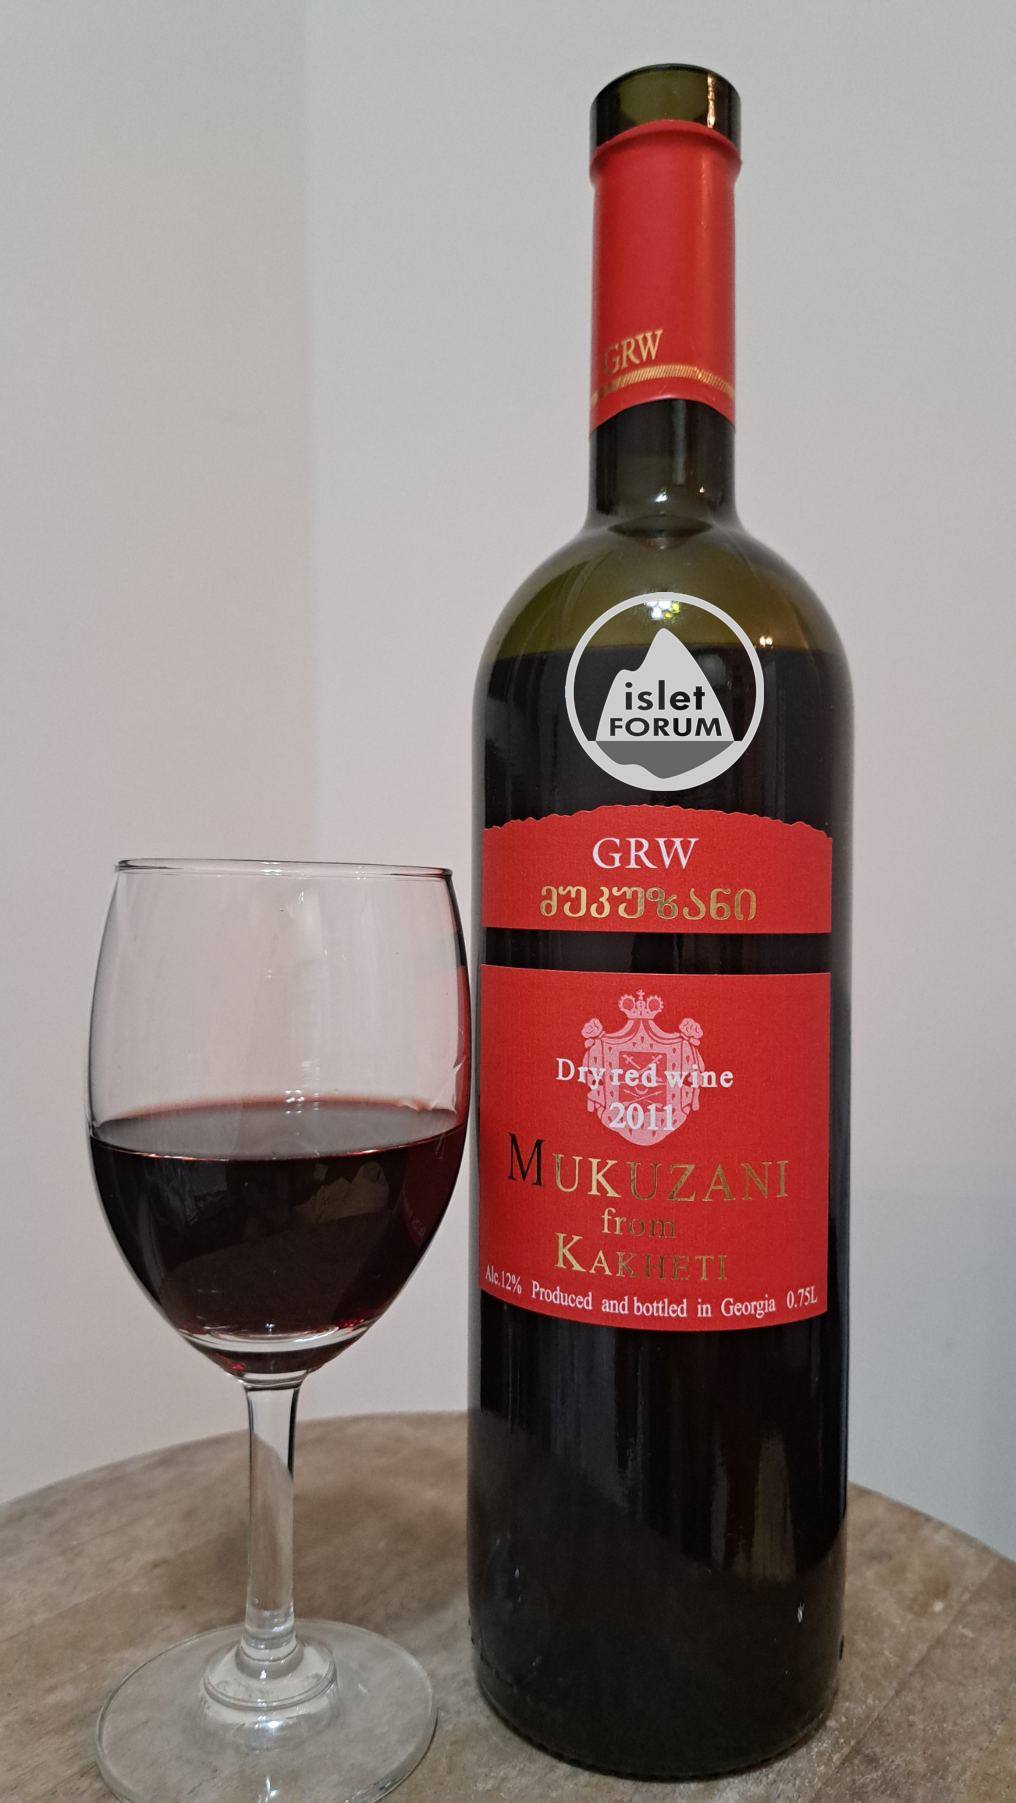 GRW winery Mukuzani Dry red wine 2011 from Kakheti  (1).jpg